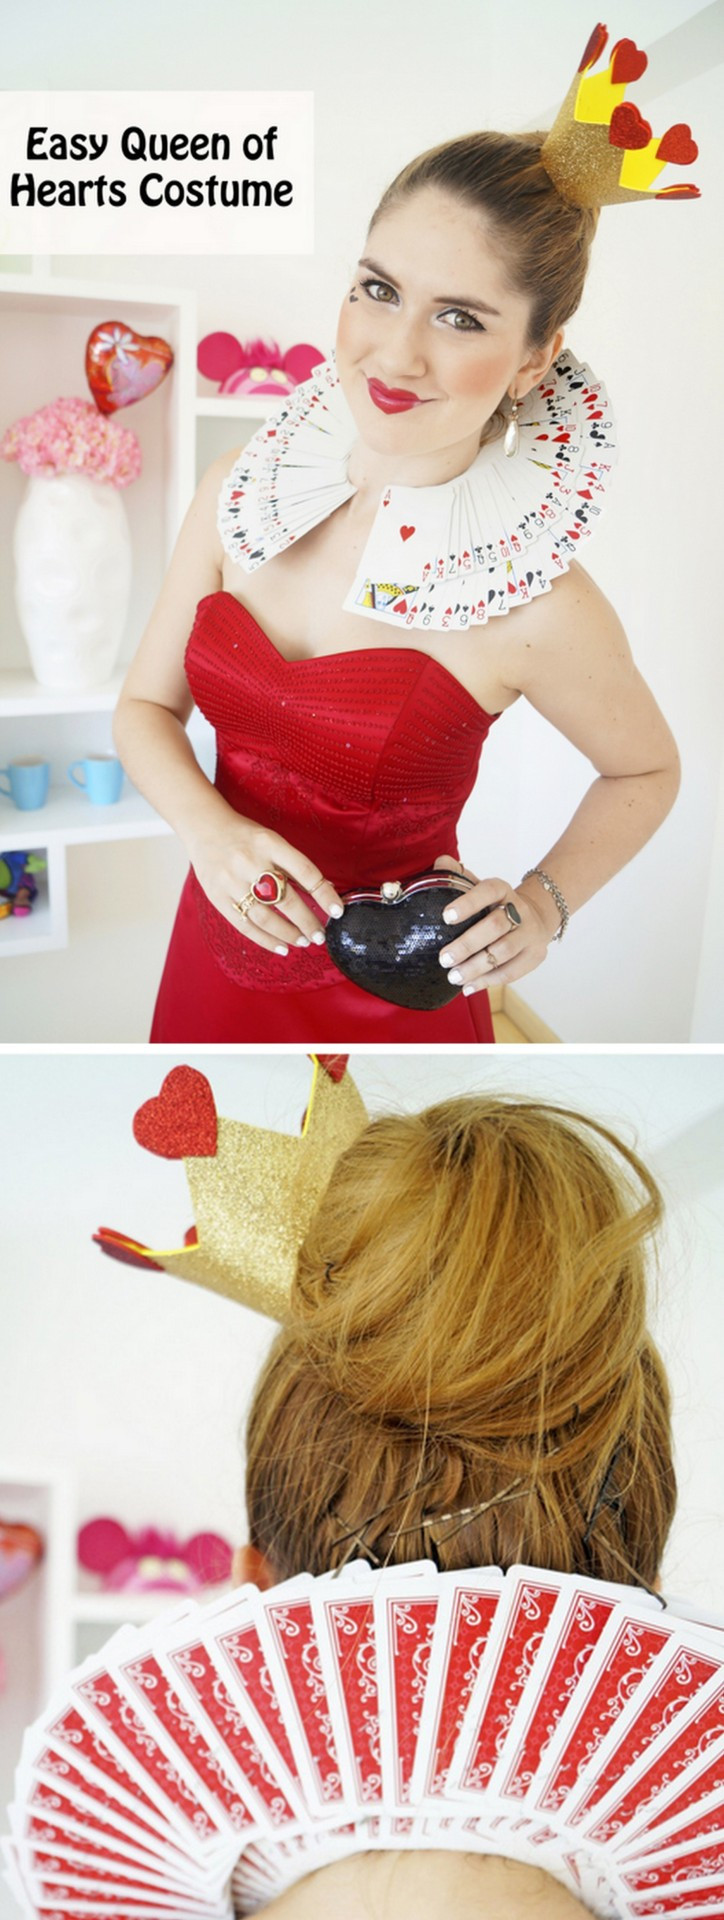 DIY Queen Of Hearts Costume
 DIzzYmaiden s Foo s & Craftsters halloweencrafts DIY